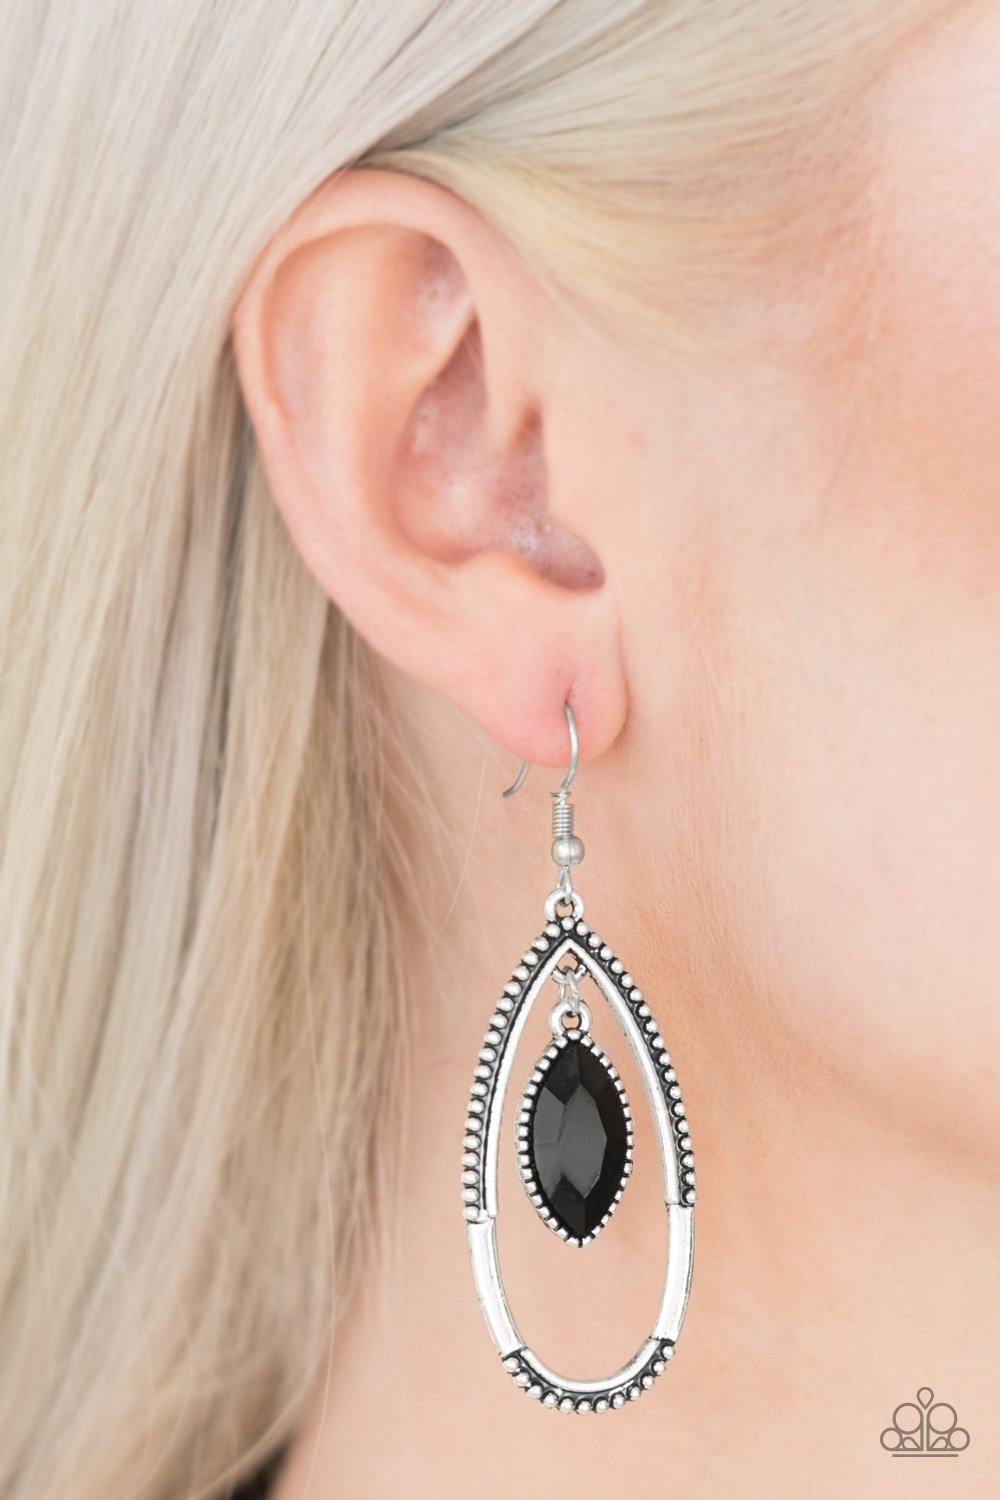 Top Rank Black Earrings - Nothin' But Jewelry by Mz. Netta